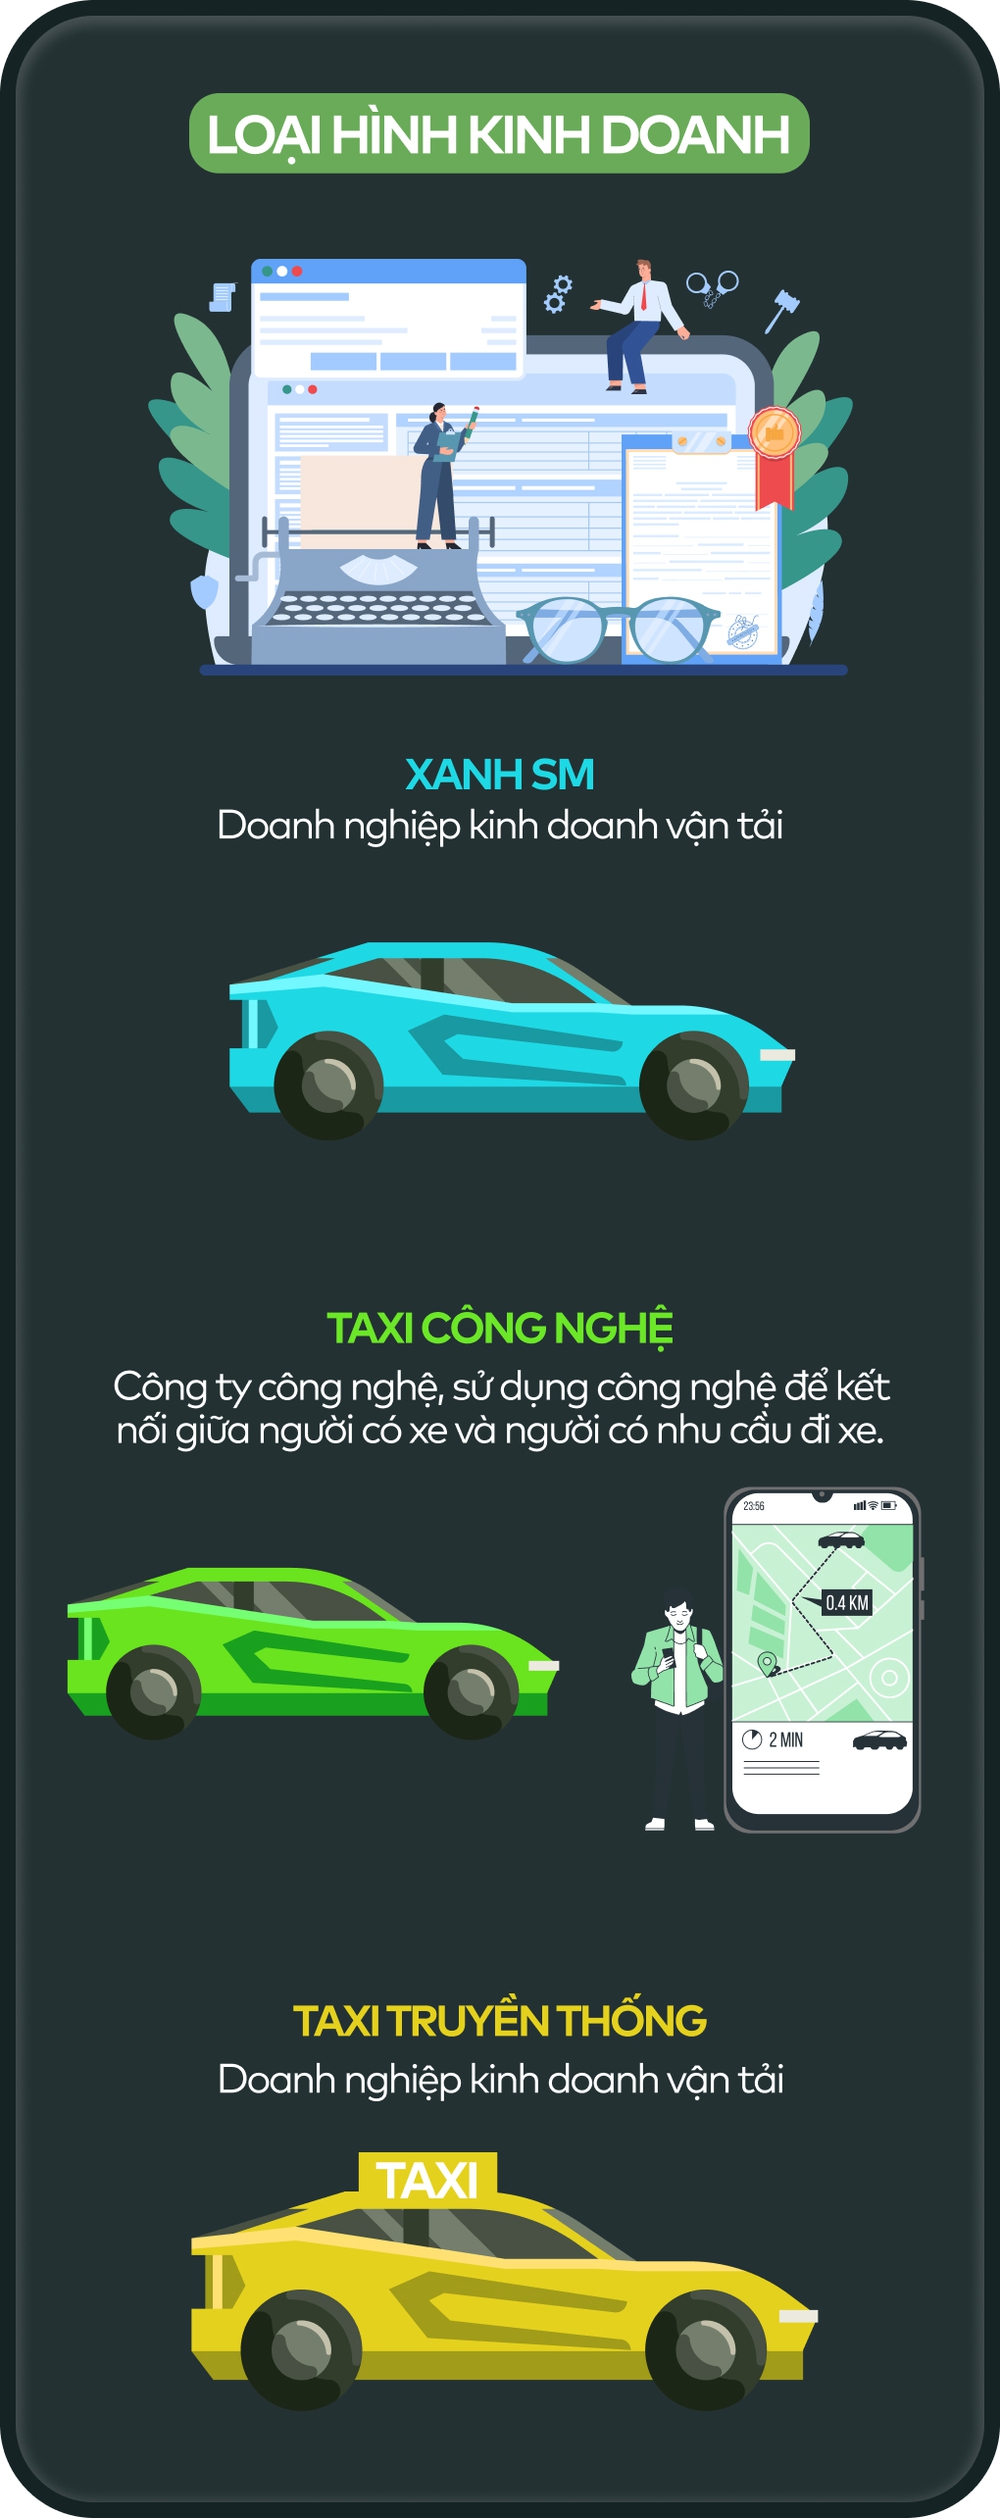 Infographic so sánh taxi Xanh SM, taxi công nghệ và taxi truyền thống - Ảnh 2.